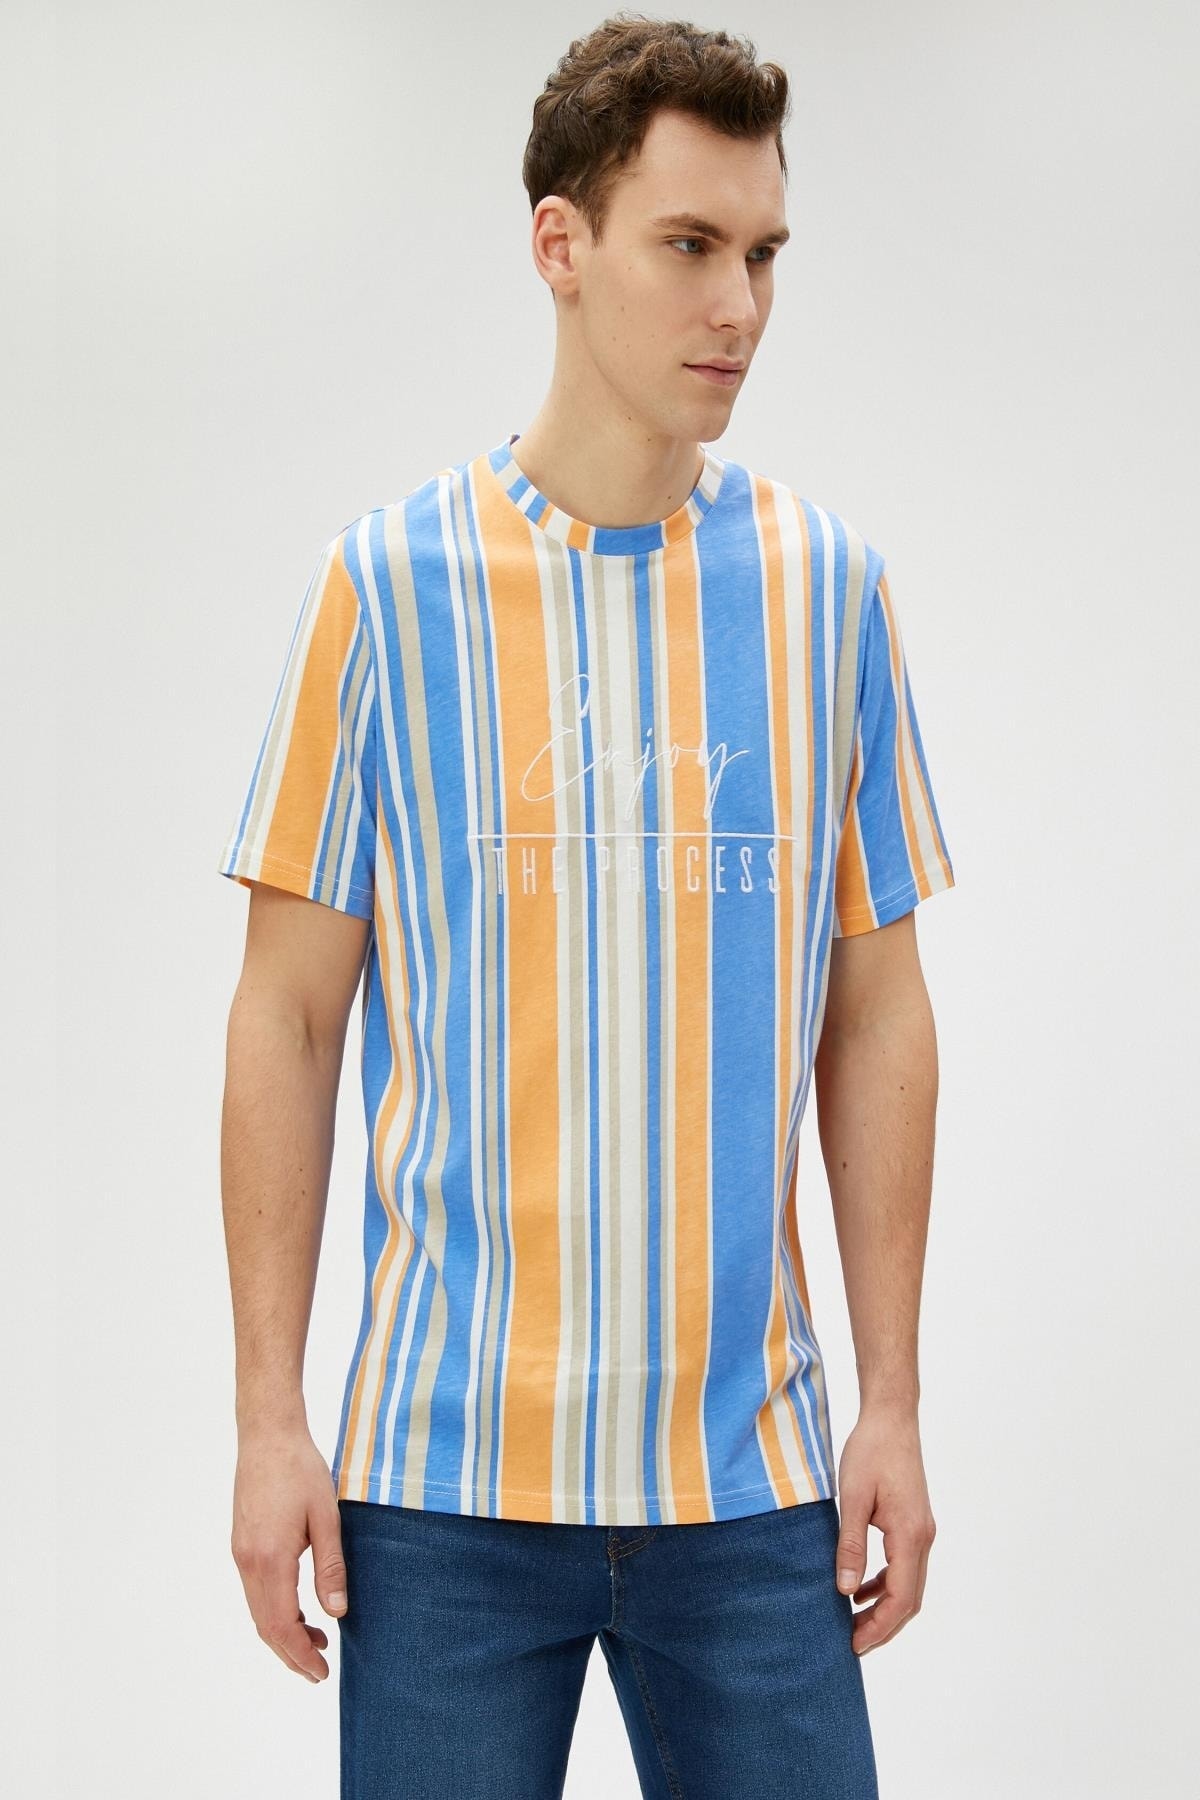 Мужская футболка в бежевую полоску Koton, разноцветный футболка в полоску l разноцветный